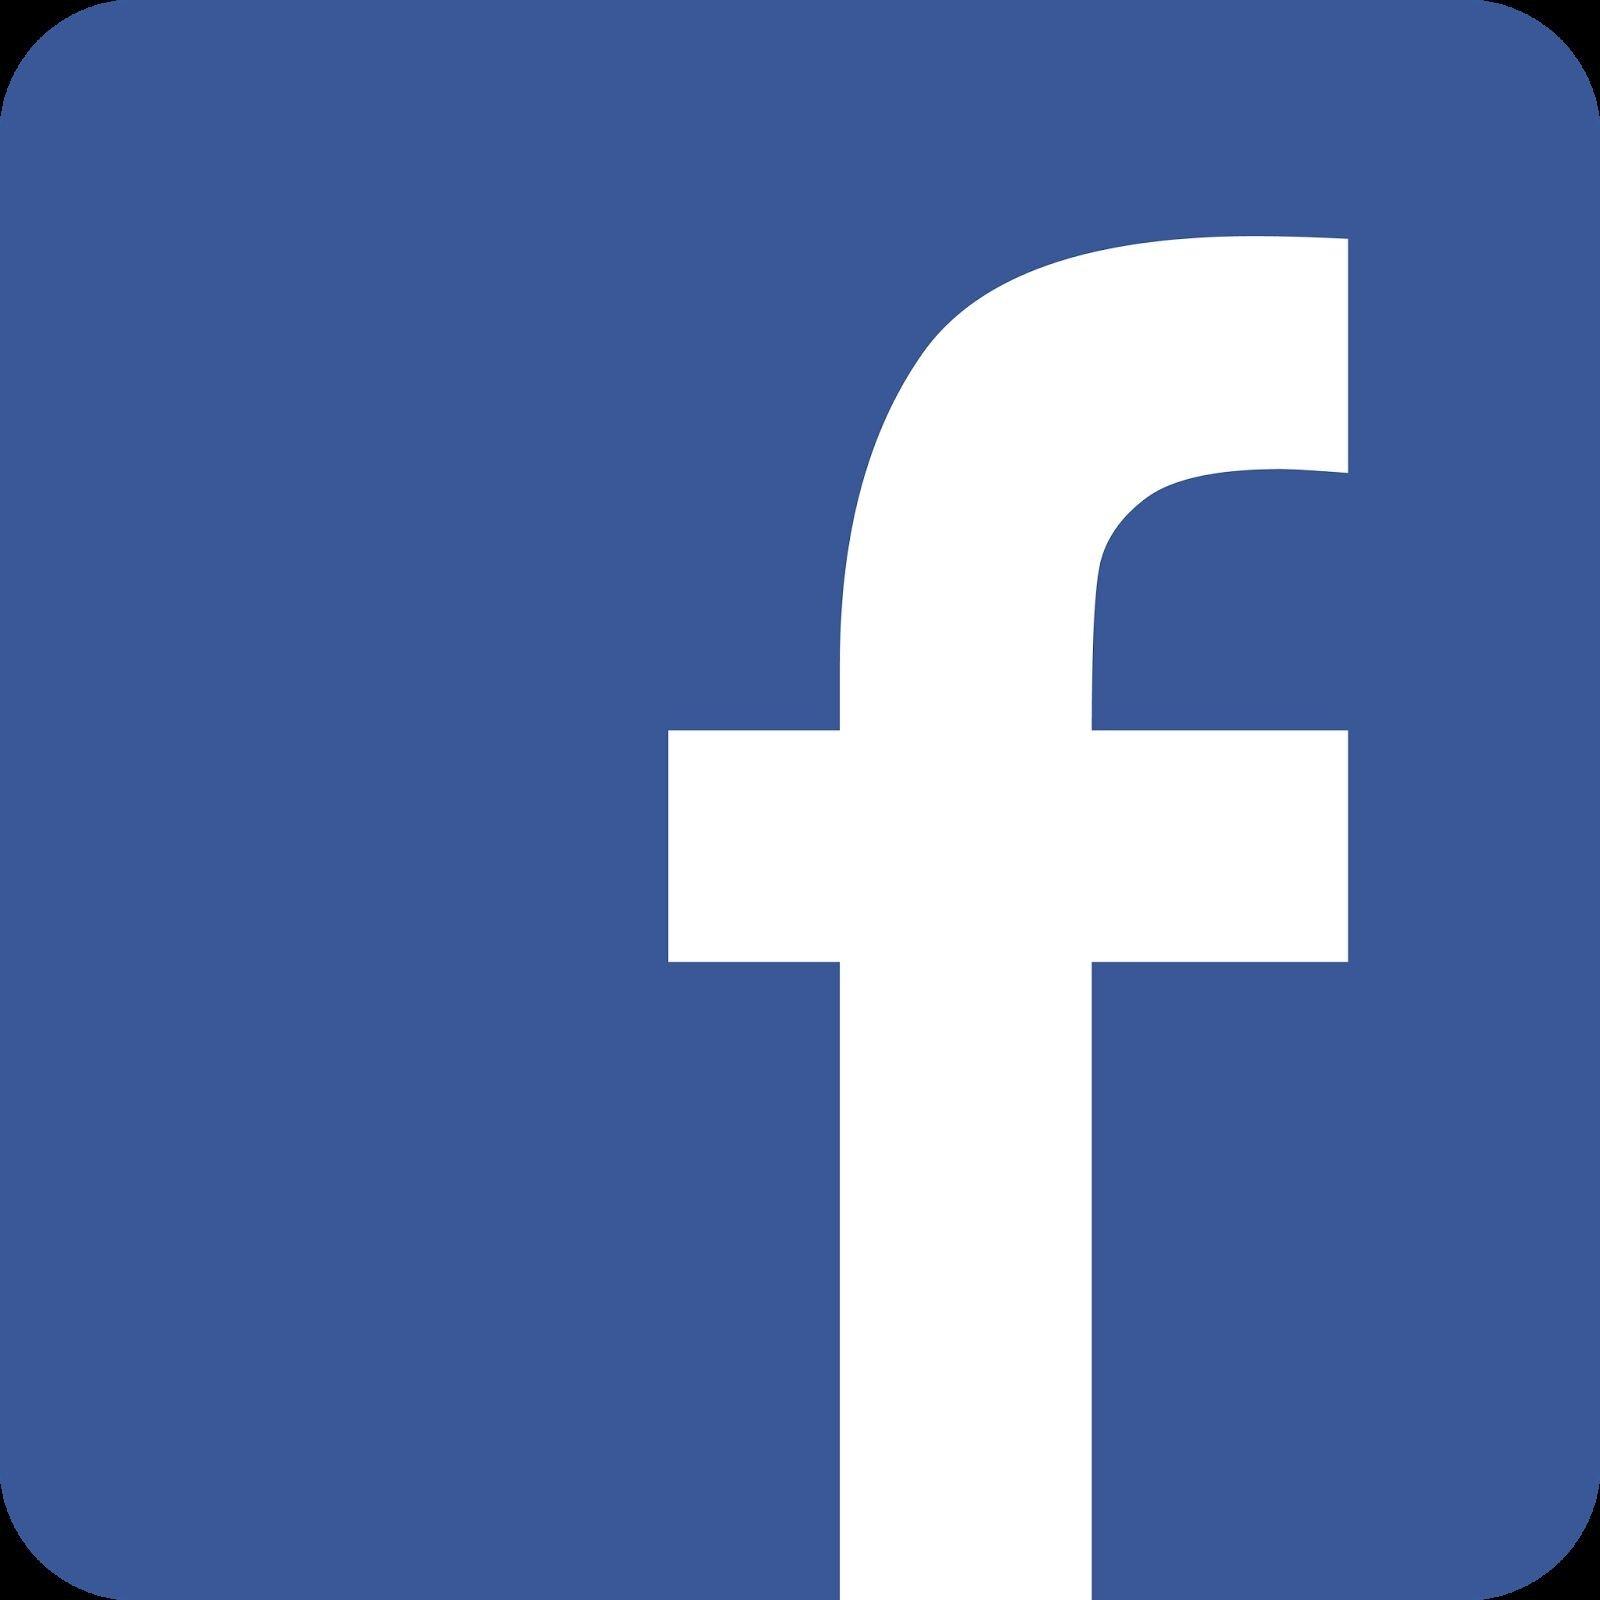 Logo mạng xã hội Facebook (Ảnh: Internet)